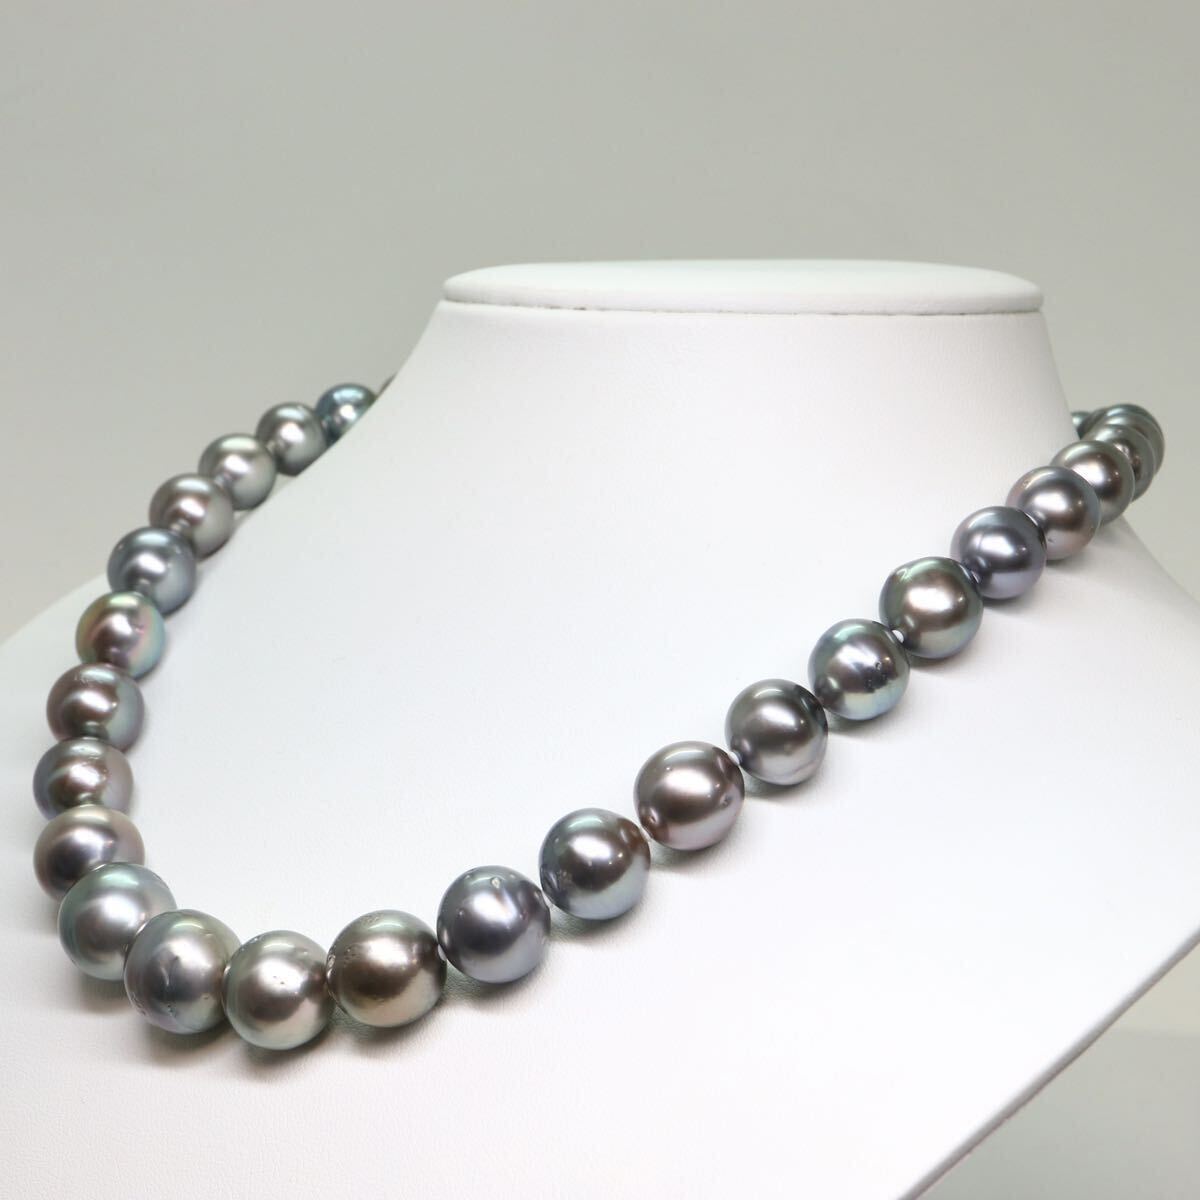 鑑別書付き!!《南洋黒蝶真珠ネックレス》A 約9.0-14.5mm珠 89.6g 約45cm pearl necklace ジュエリー jewelry EC0/EC0の画像3